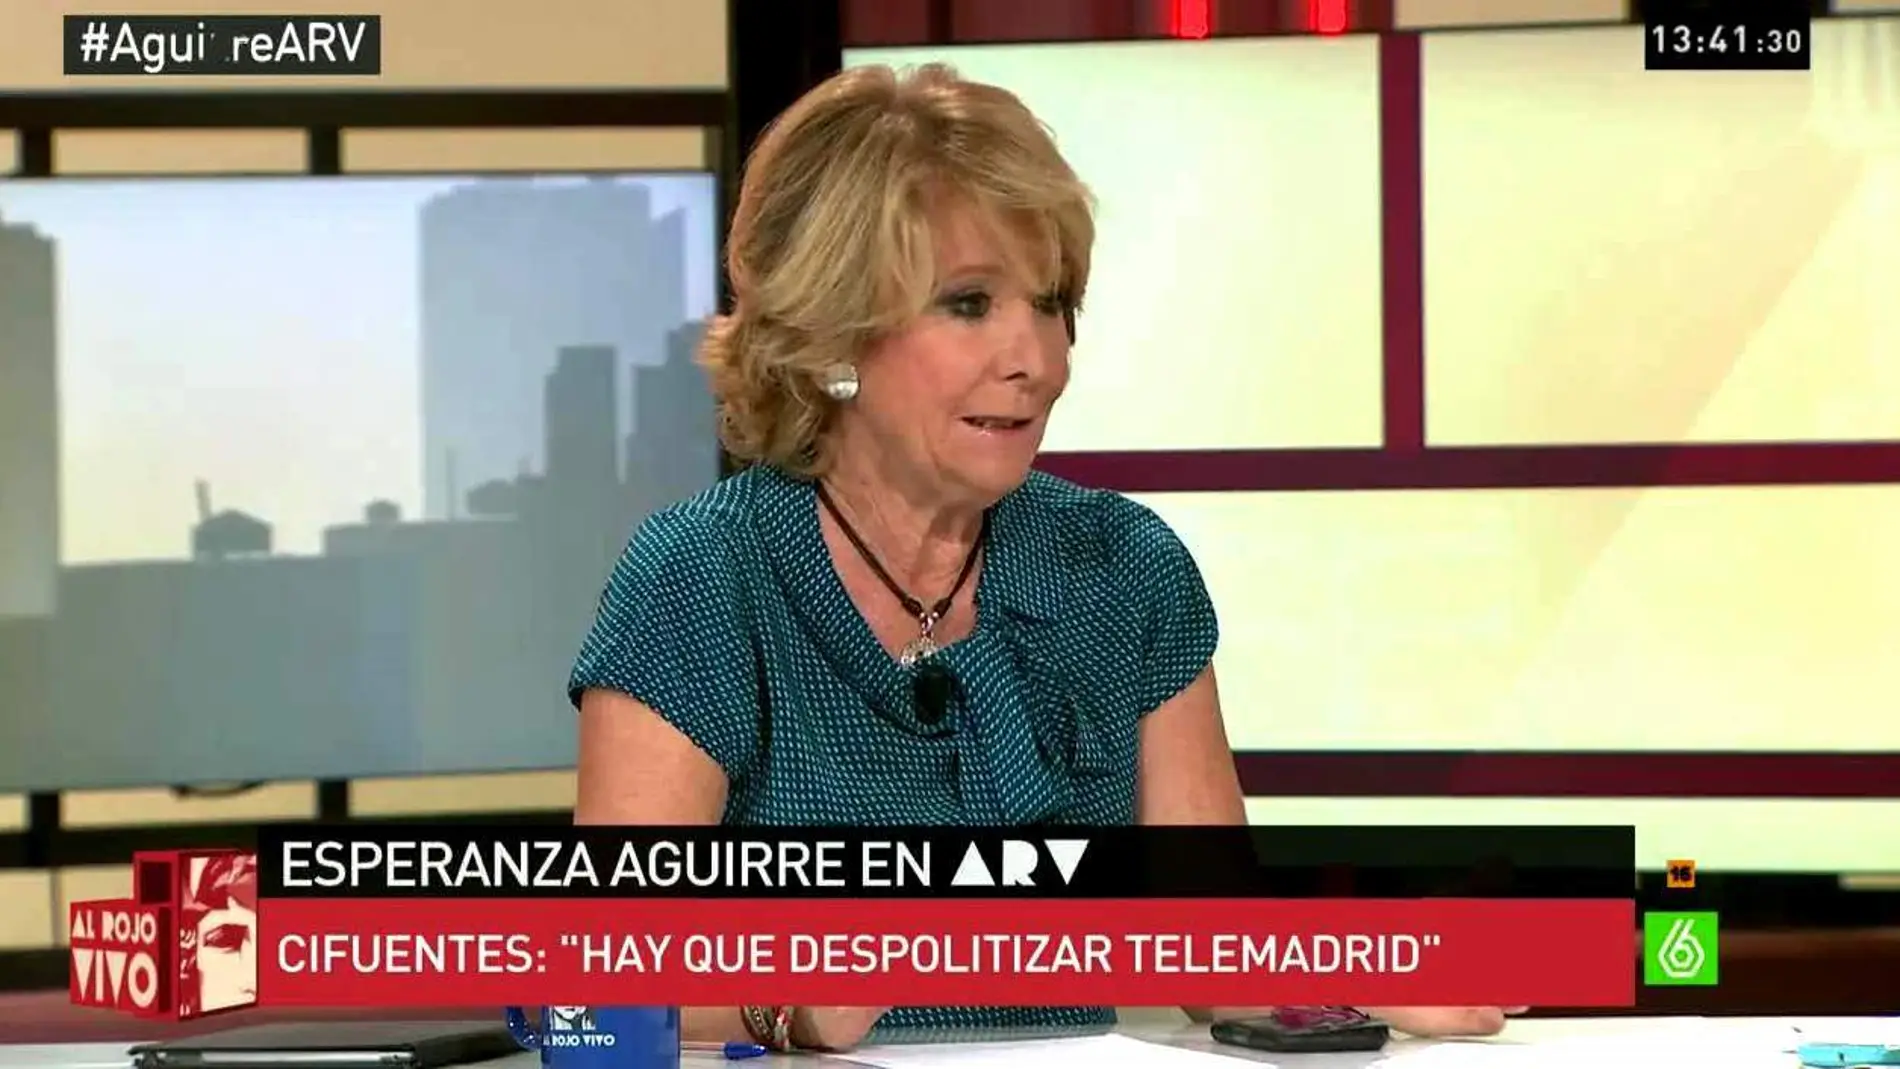 Esperanza Aguirre en ARV